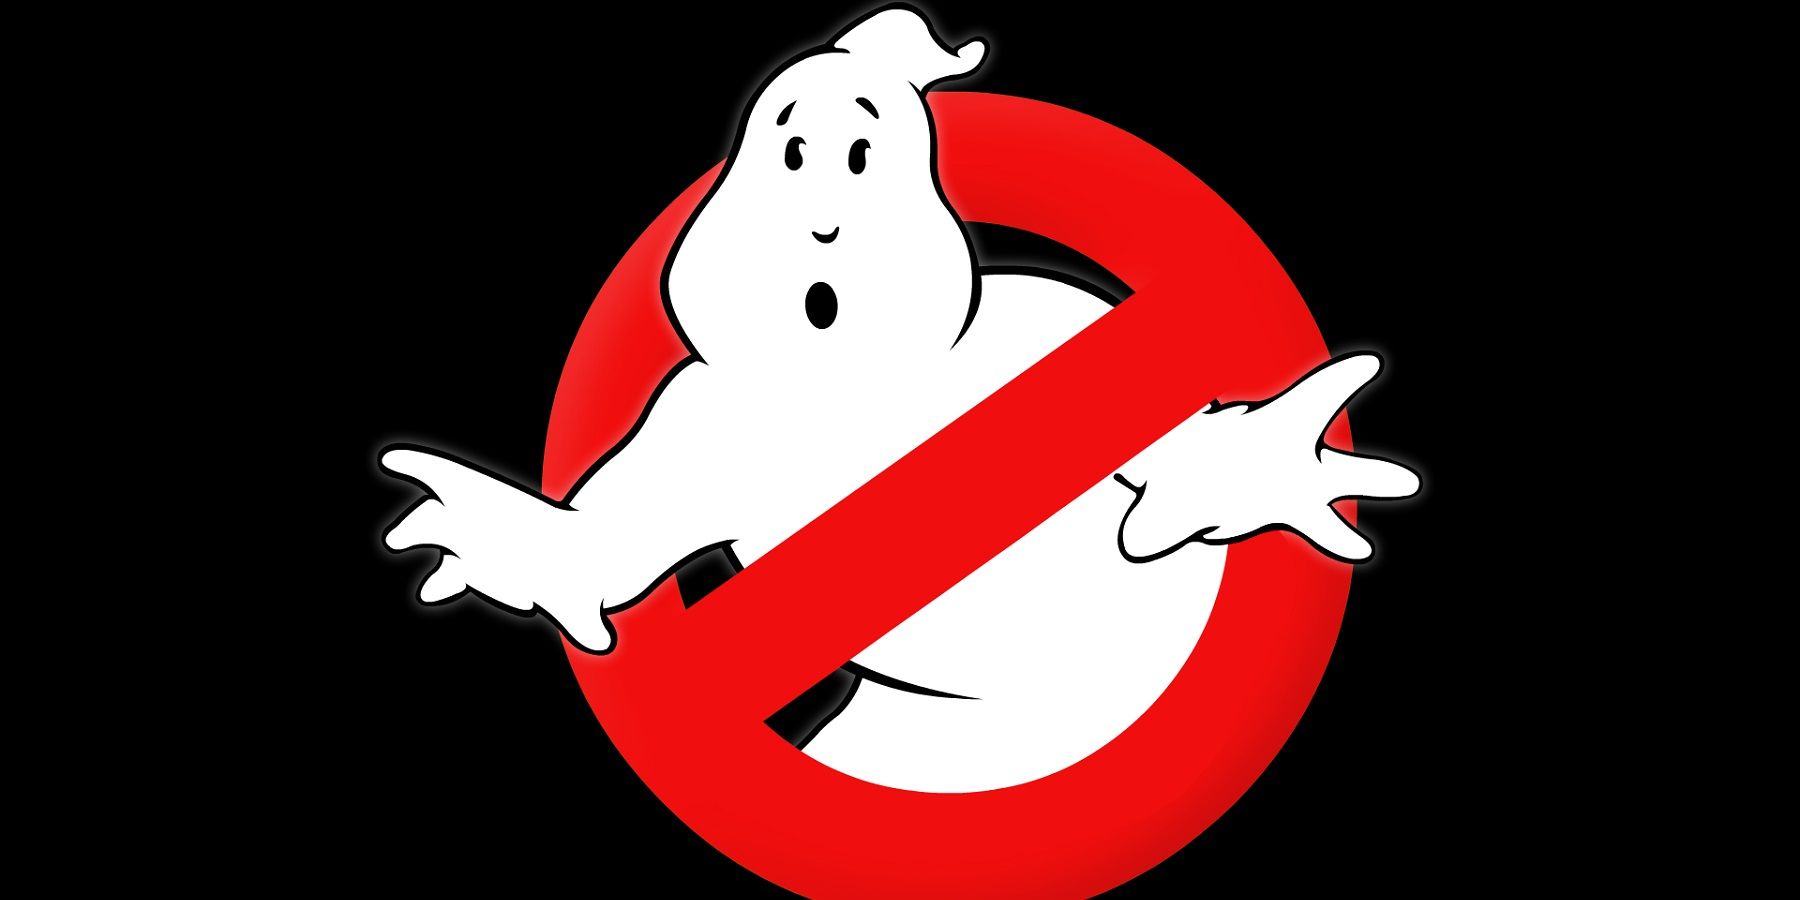 Предполага се, че новата игра Ghostbusters е в процес на разработка до петък, 13-ти Dev